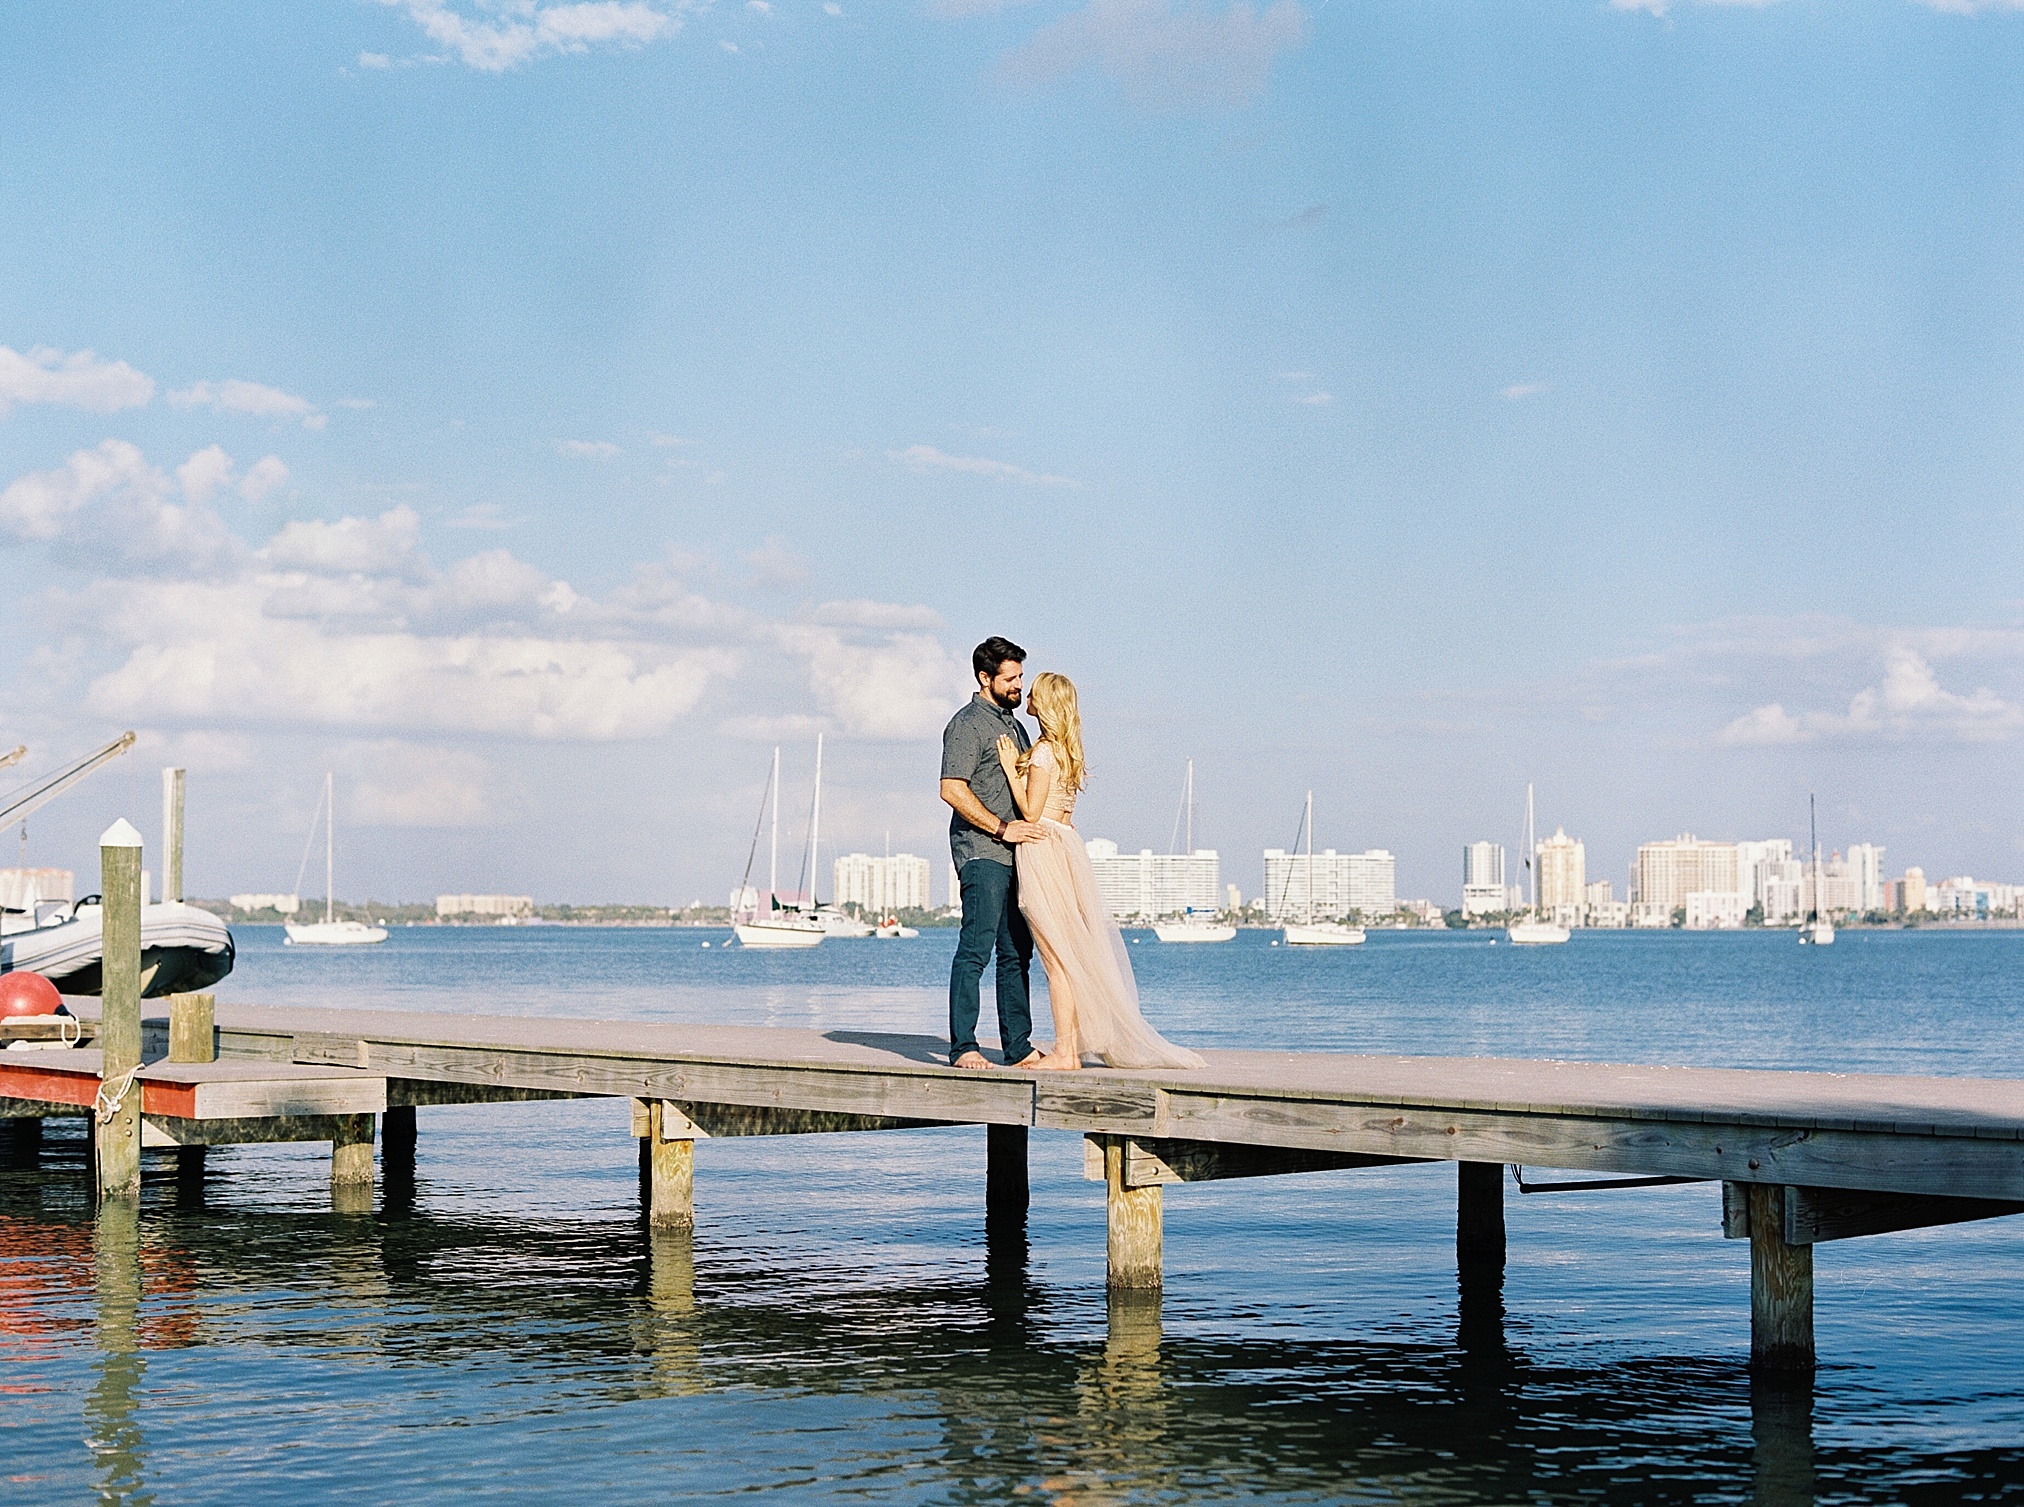 Sarasota Sailboat Engagement Session, Sarasota Wedding Photographer, Sarasota Film Photographer